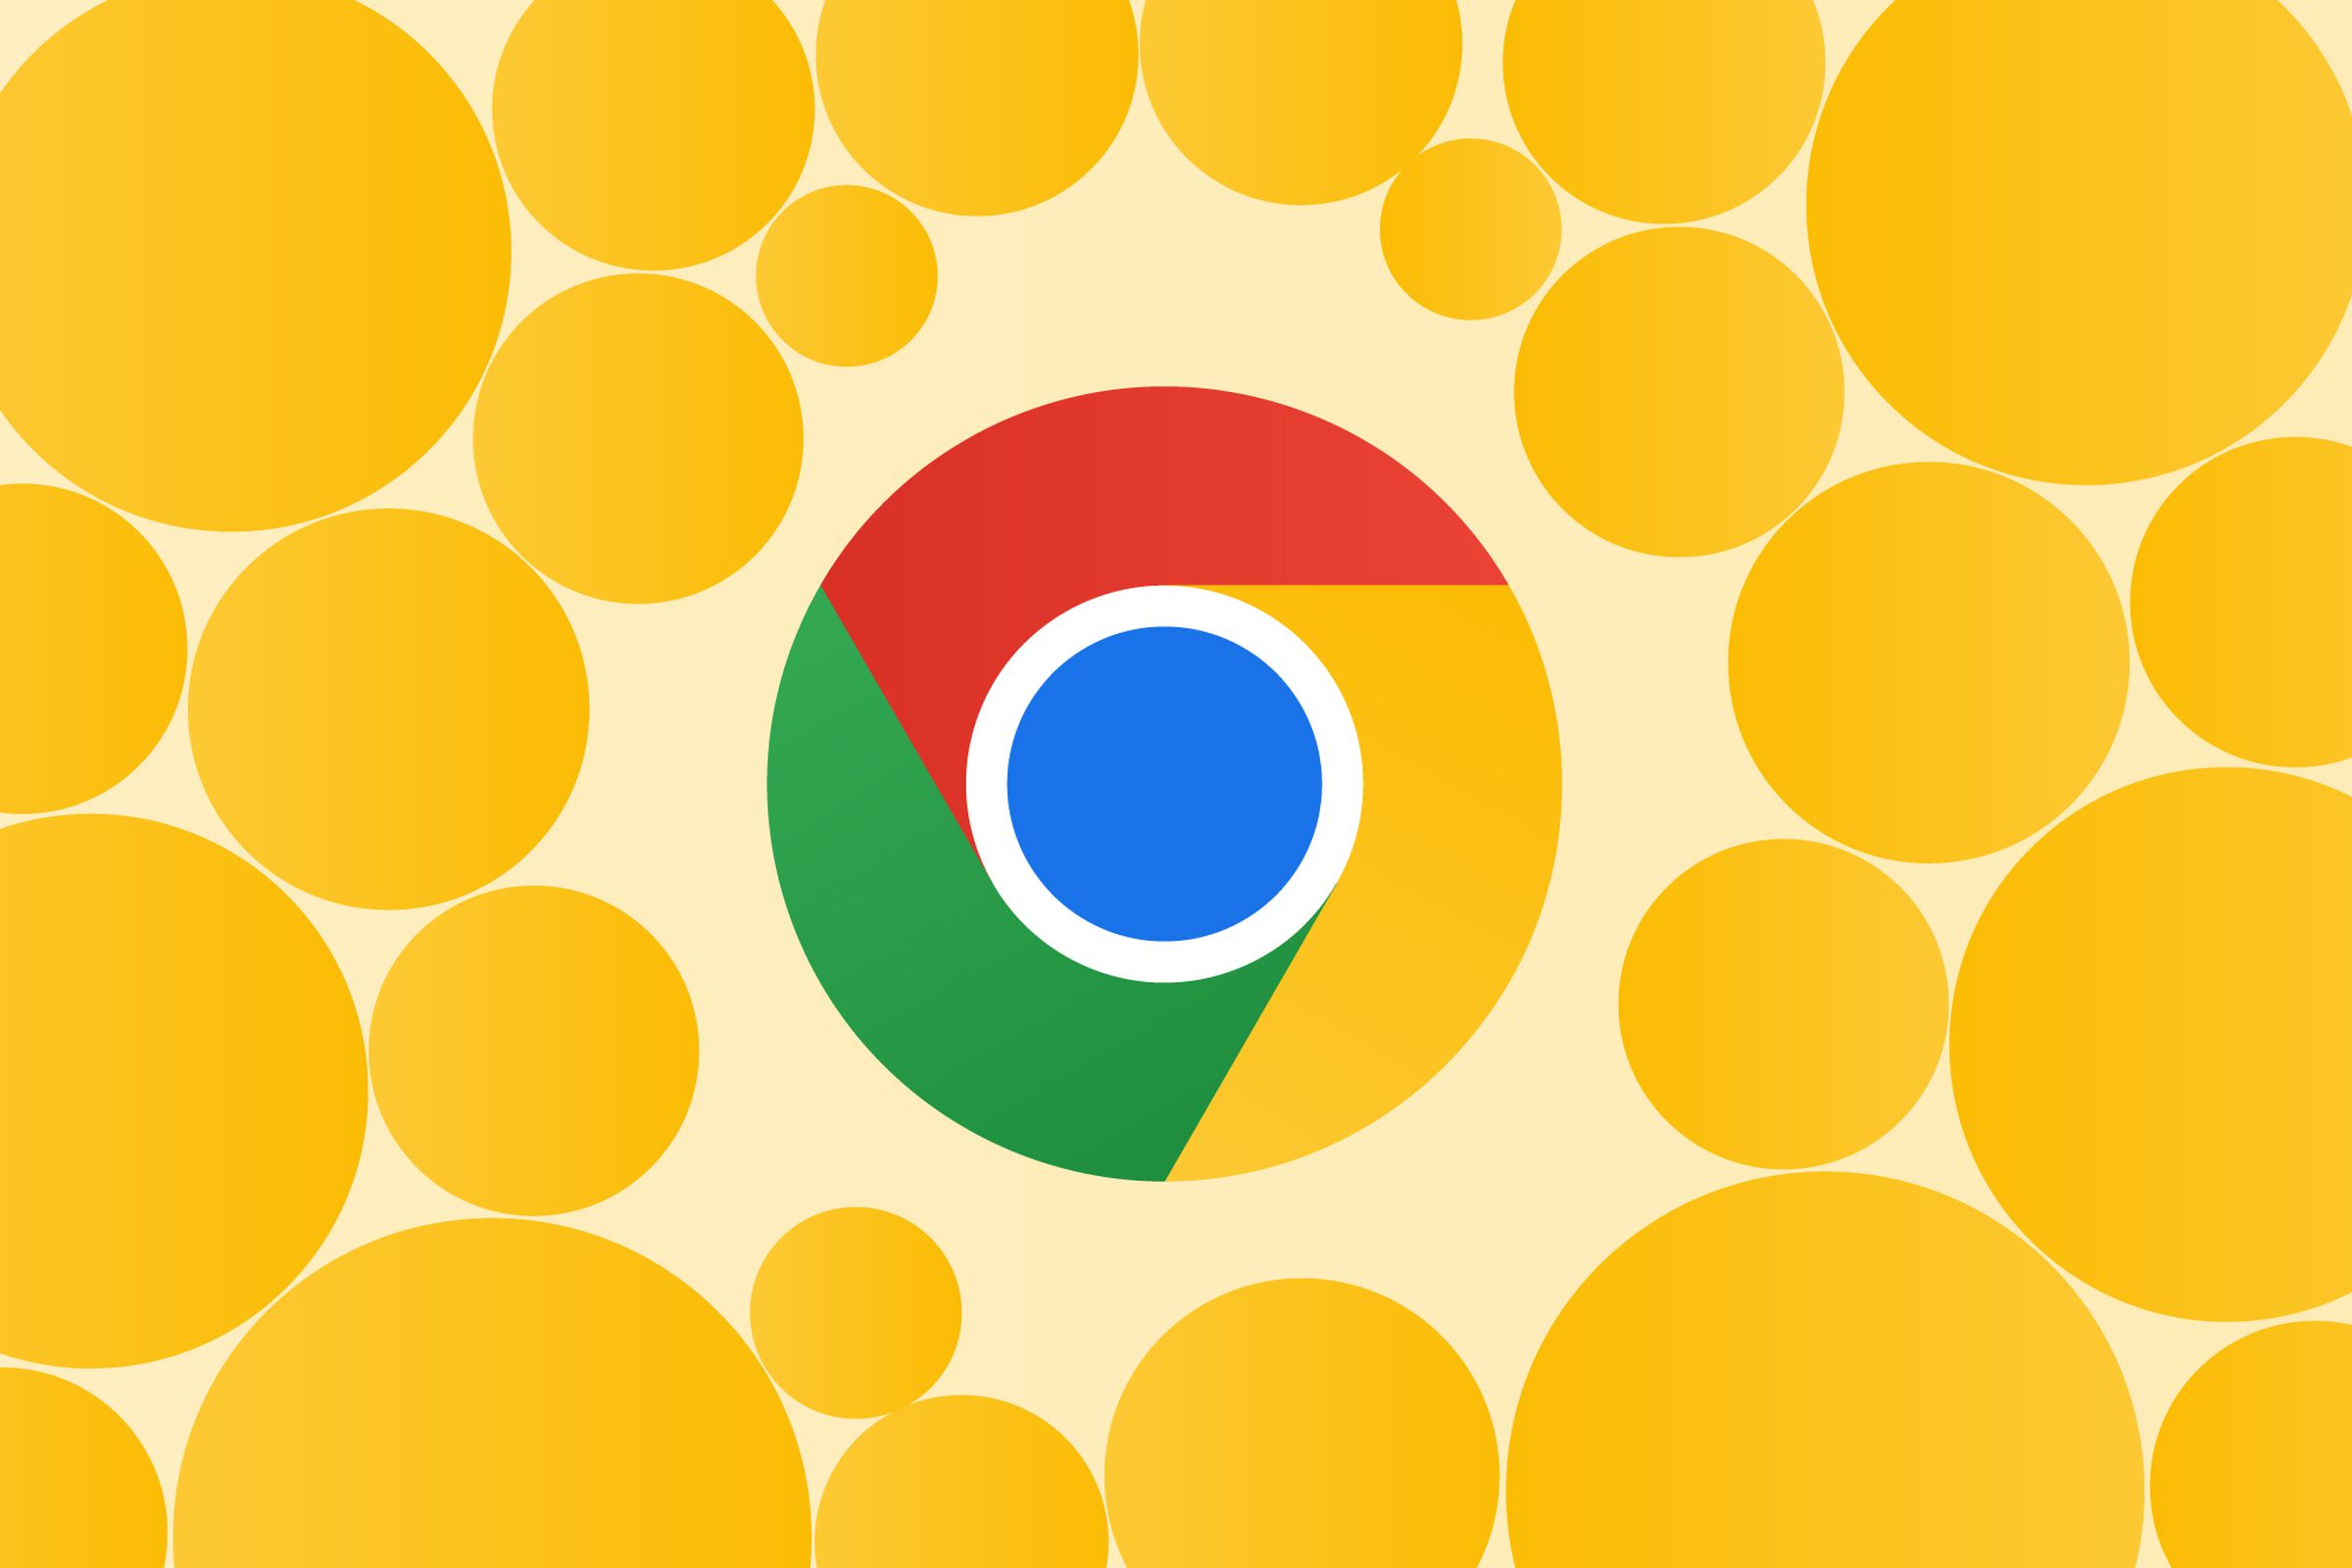 Gambar logo Chrome yang dikelilingi lingkaran kuning.